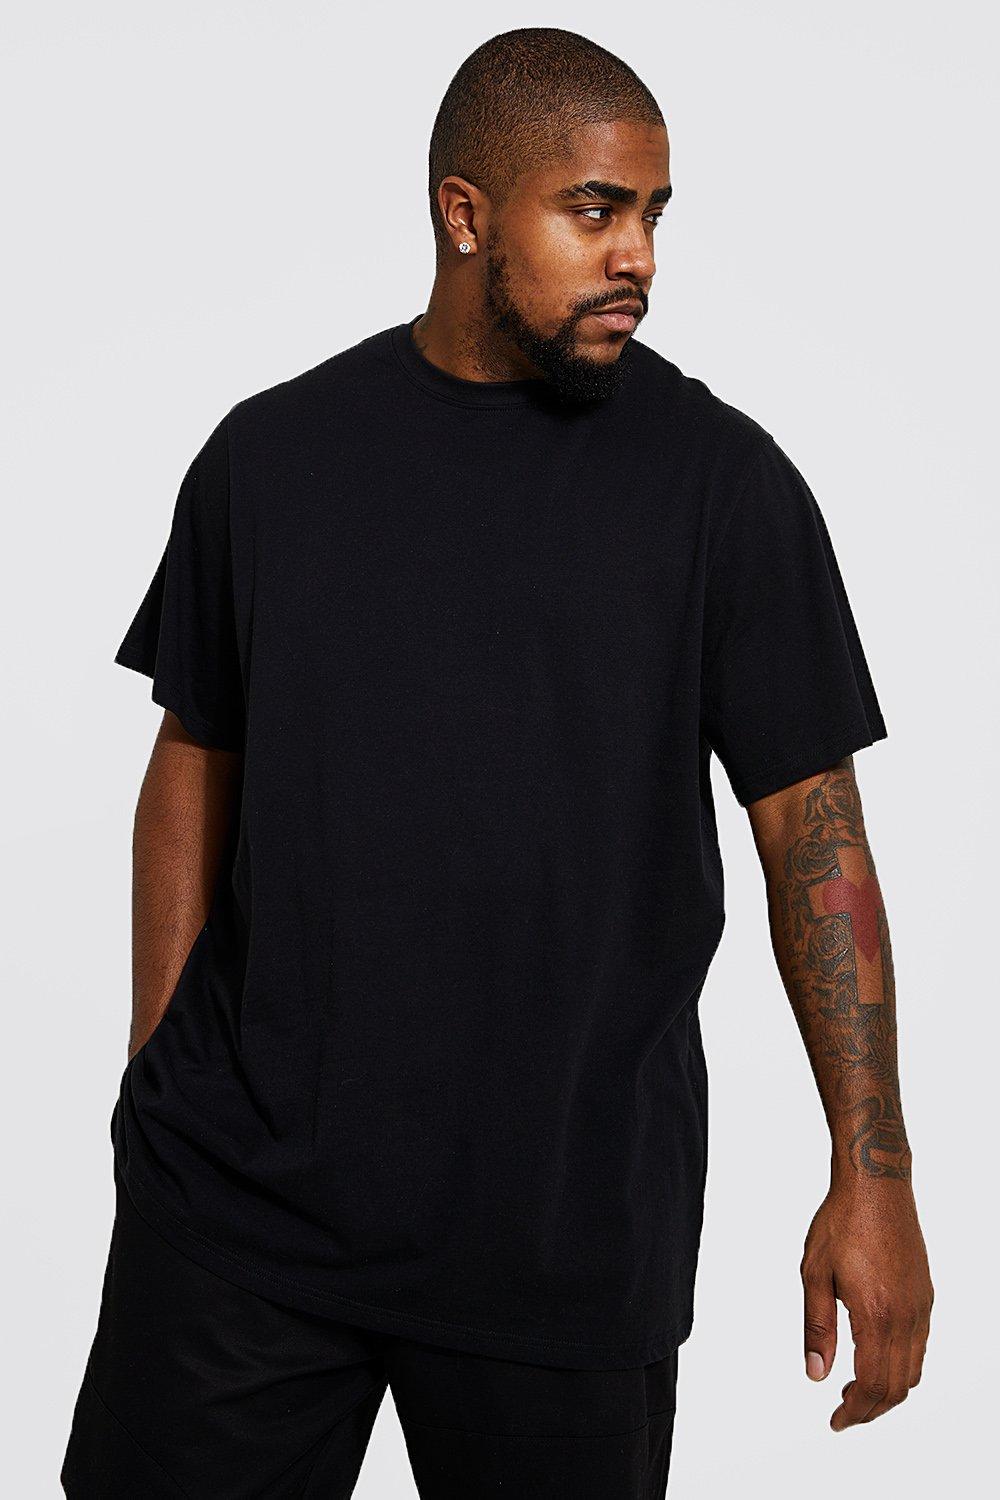 Big and tall t-shirt blue dragon design black tee shirt tall shirts for men